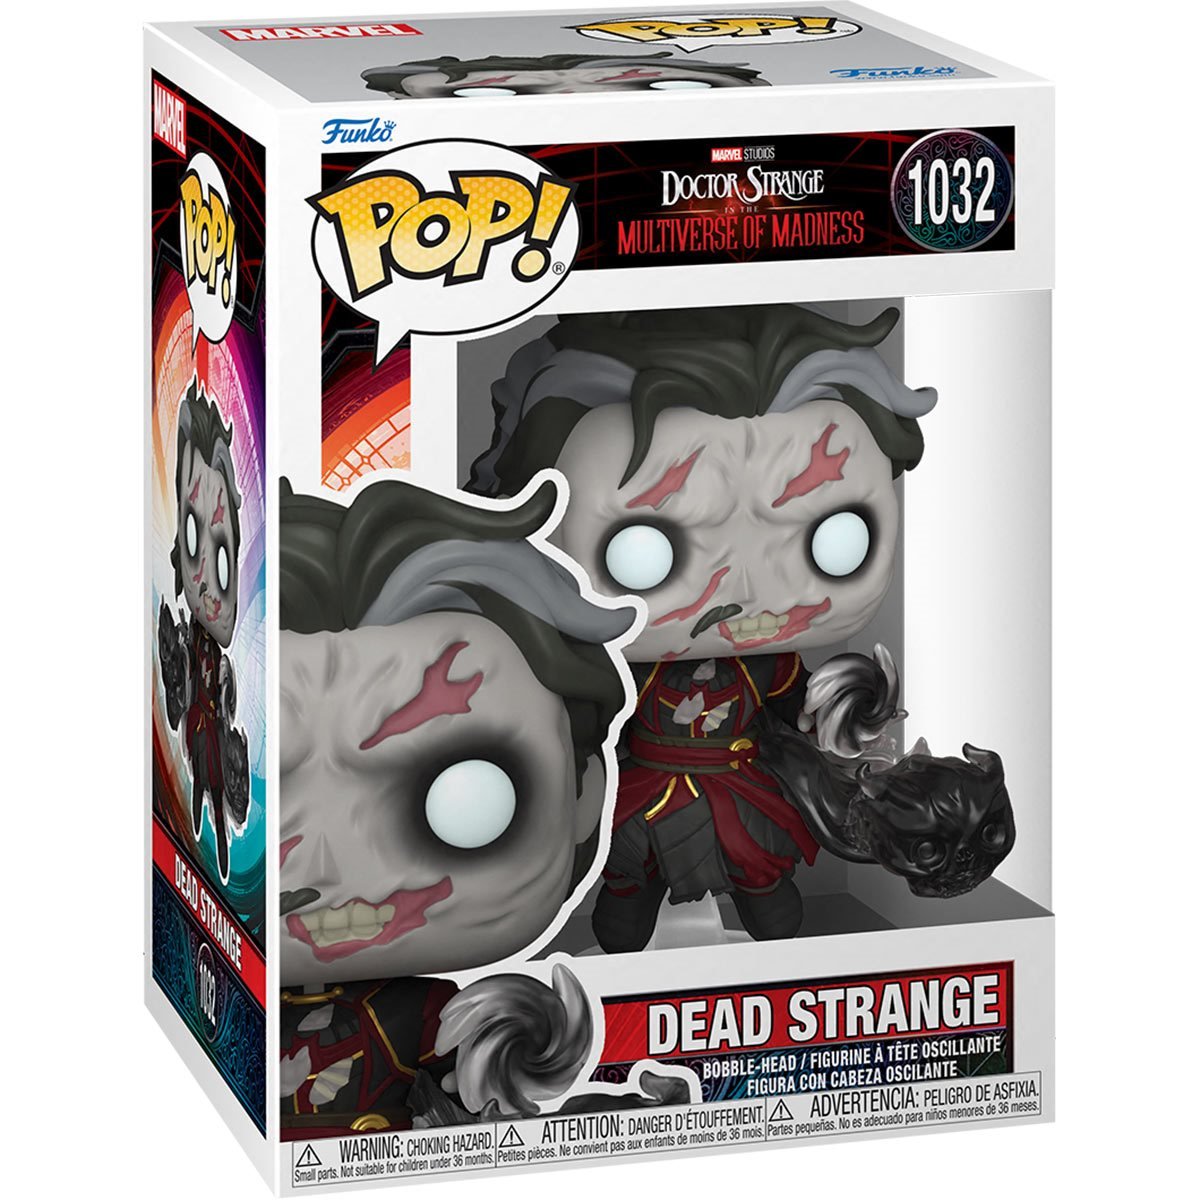 Dead Strange #1032 Pop!